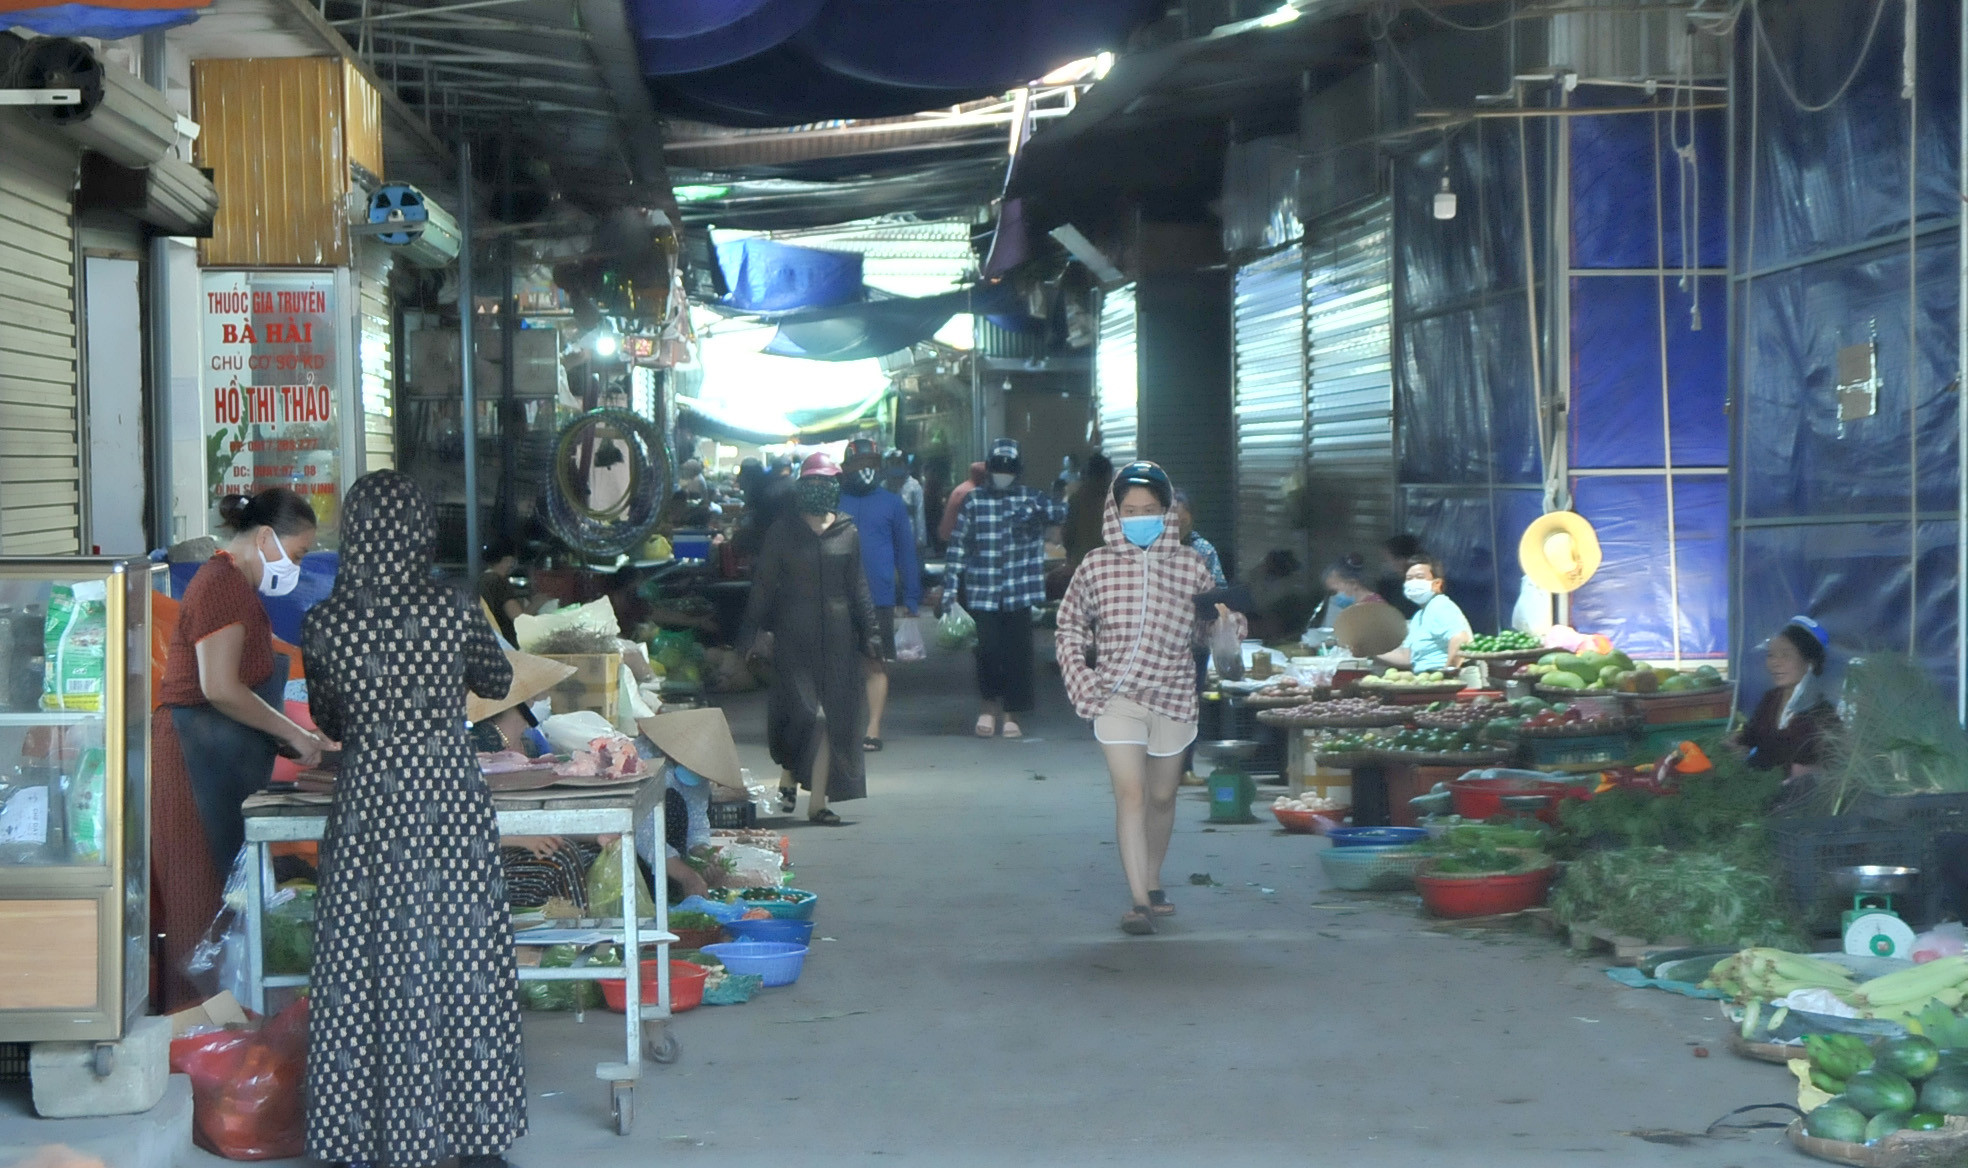 Khu vực chợ Ga Vinh sáng nay 25/6 người dân vẫn đi chợ khá tấp nập. Ảnh: Tiến Đông